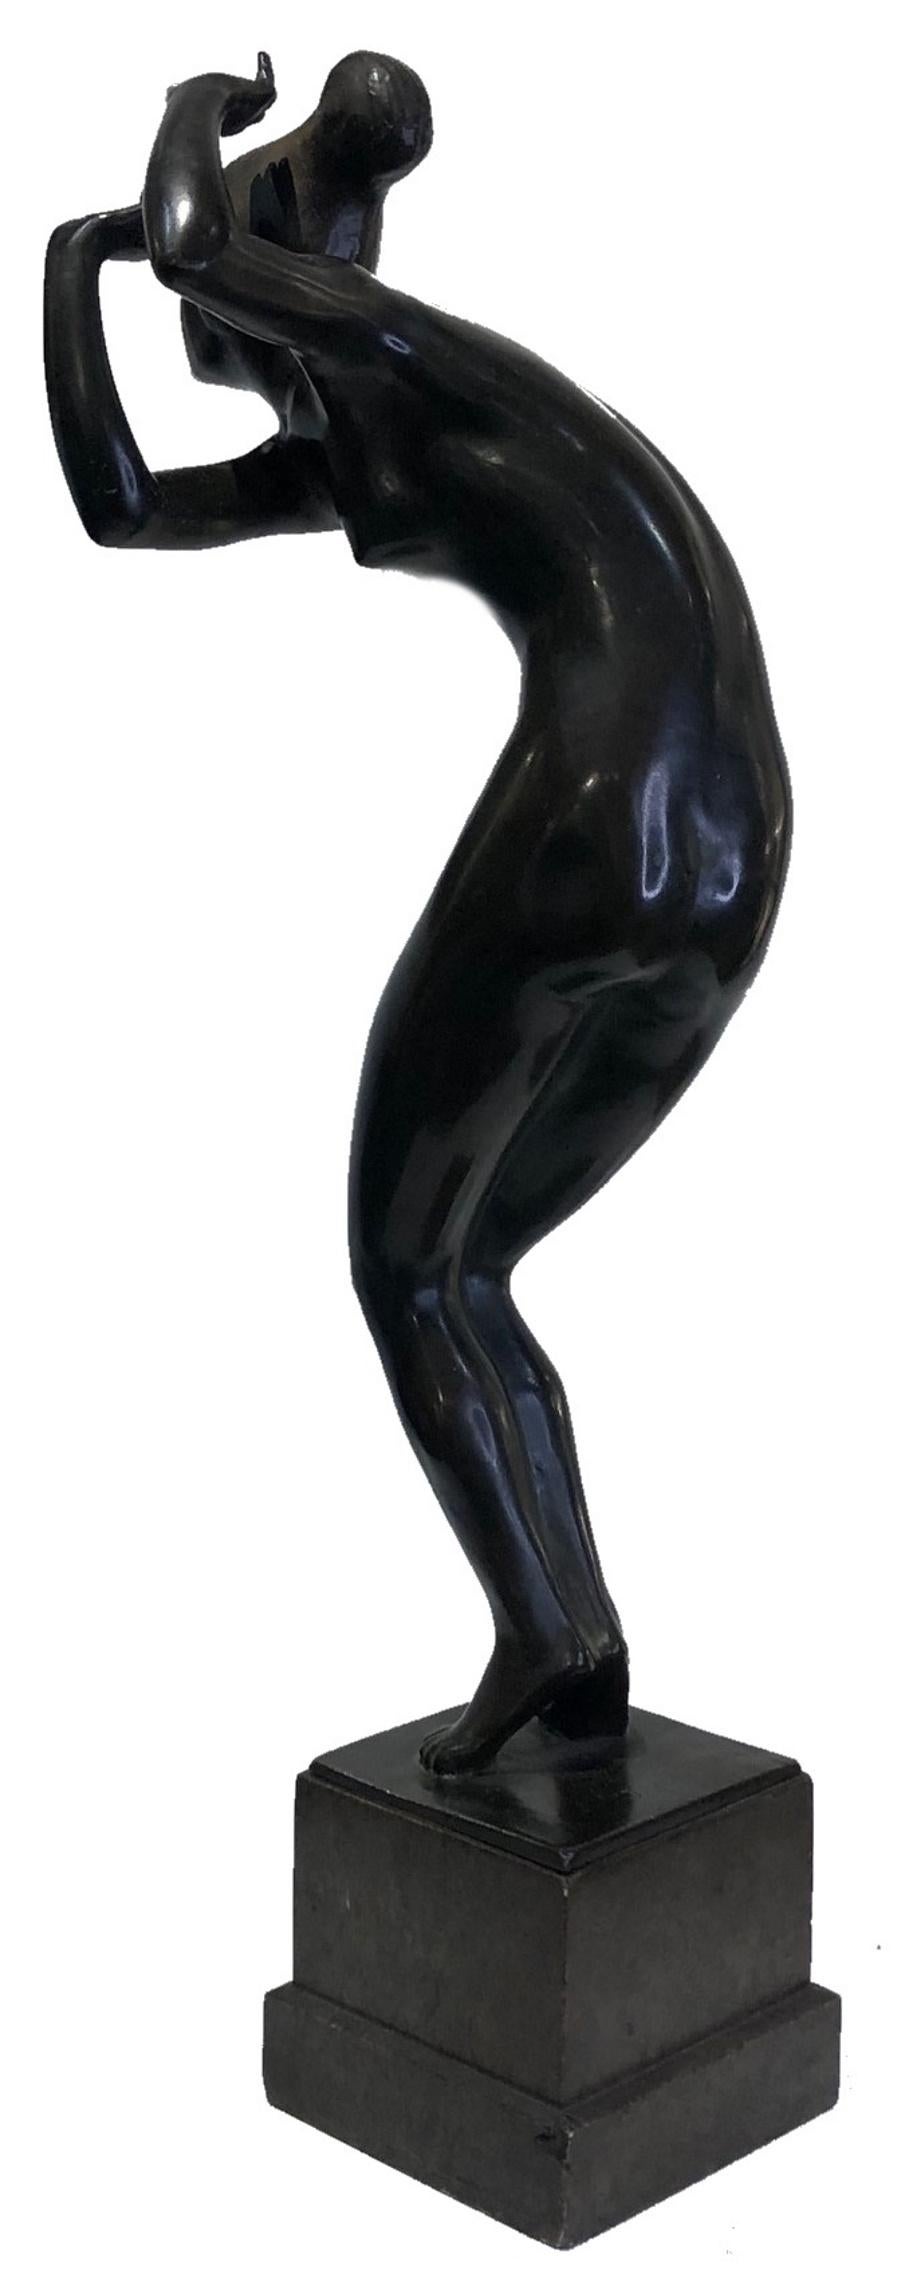 Art déco belge 
Jules Werson
Danseuse nue 
Sculpture en bronze patiné
Circa 1920 

DIMENSIONS
Hauteur : 18 pouces            Largeur : 7 pouces            Profondeur : 3,75 pouces

À PROPOS DE
Cette sculpture du genre 